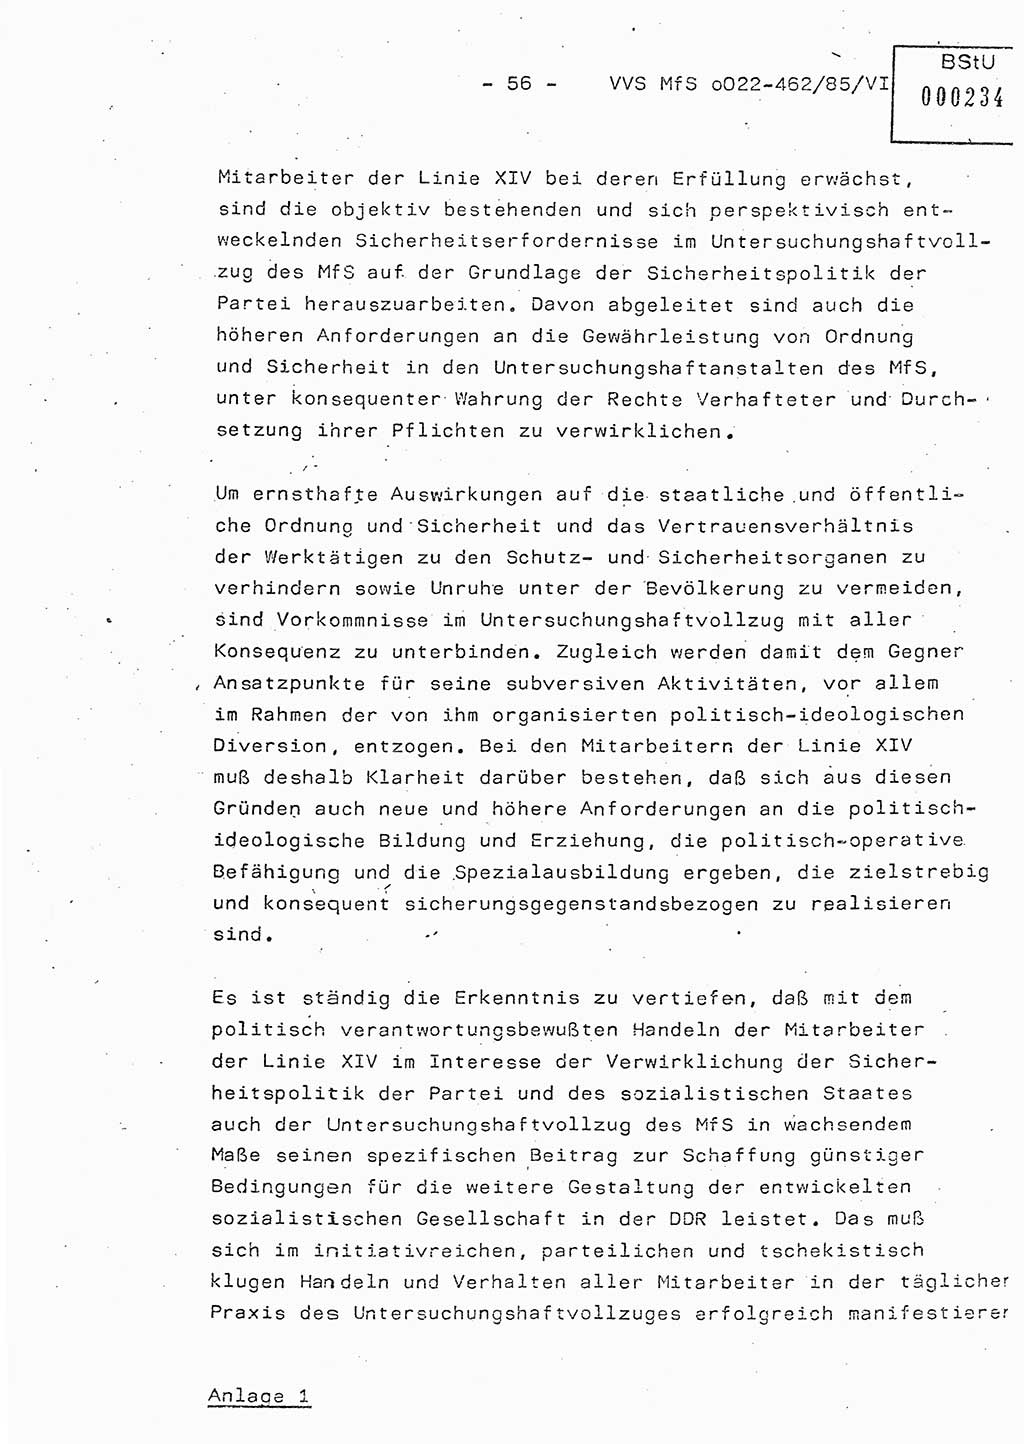 Der Untersuchungshaftvollzug im MfS, Schulungsmaterial Teil Ⅵ, Ministerium für Staatssicherheit [Deutsche Demokratische Republik (DDR)], Abteilung (Abt.) ⅩⅣ, Vertrauliche Verschlußsache (VVS) o022-462/85/Ⅵ, Berlin 1985, Seite 56 (Sch.-Mat. Ⅵ MfS DDR Abt. ⅩⅣ VVS o022-462/85/Ⅵ 1985, S. 56)